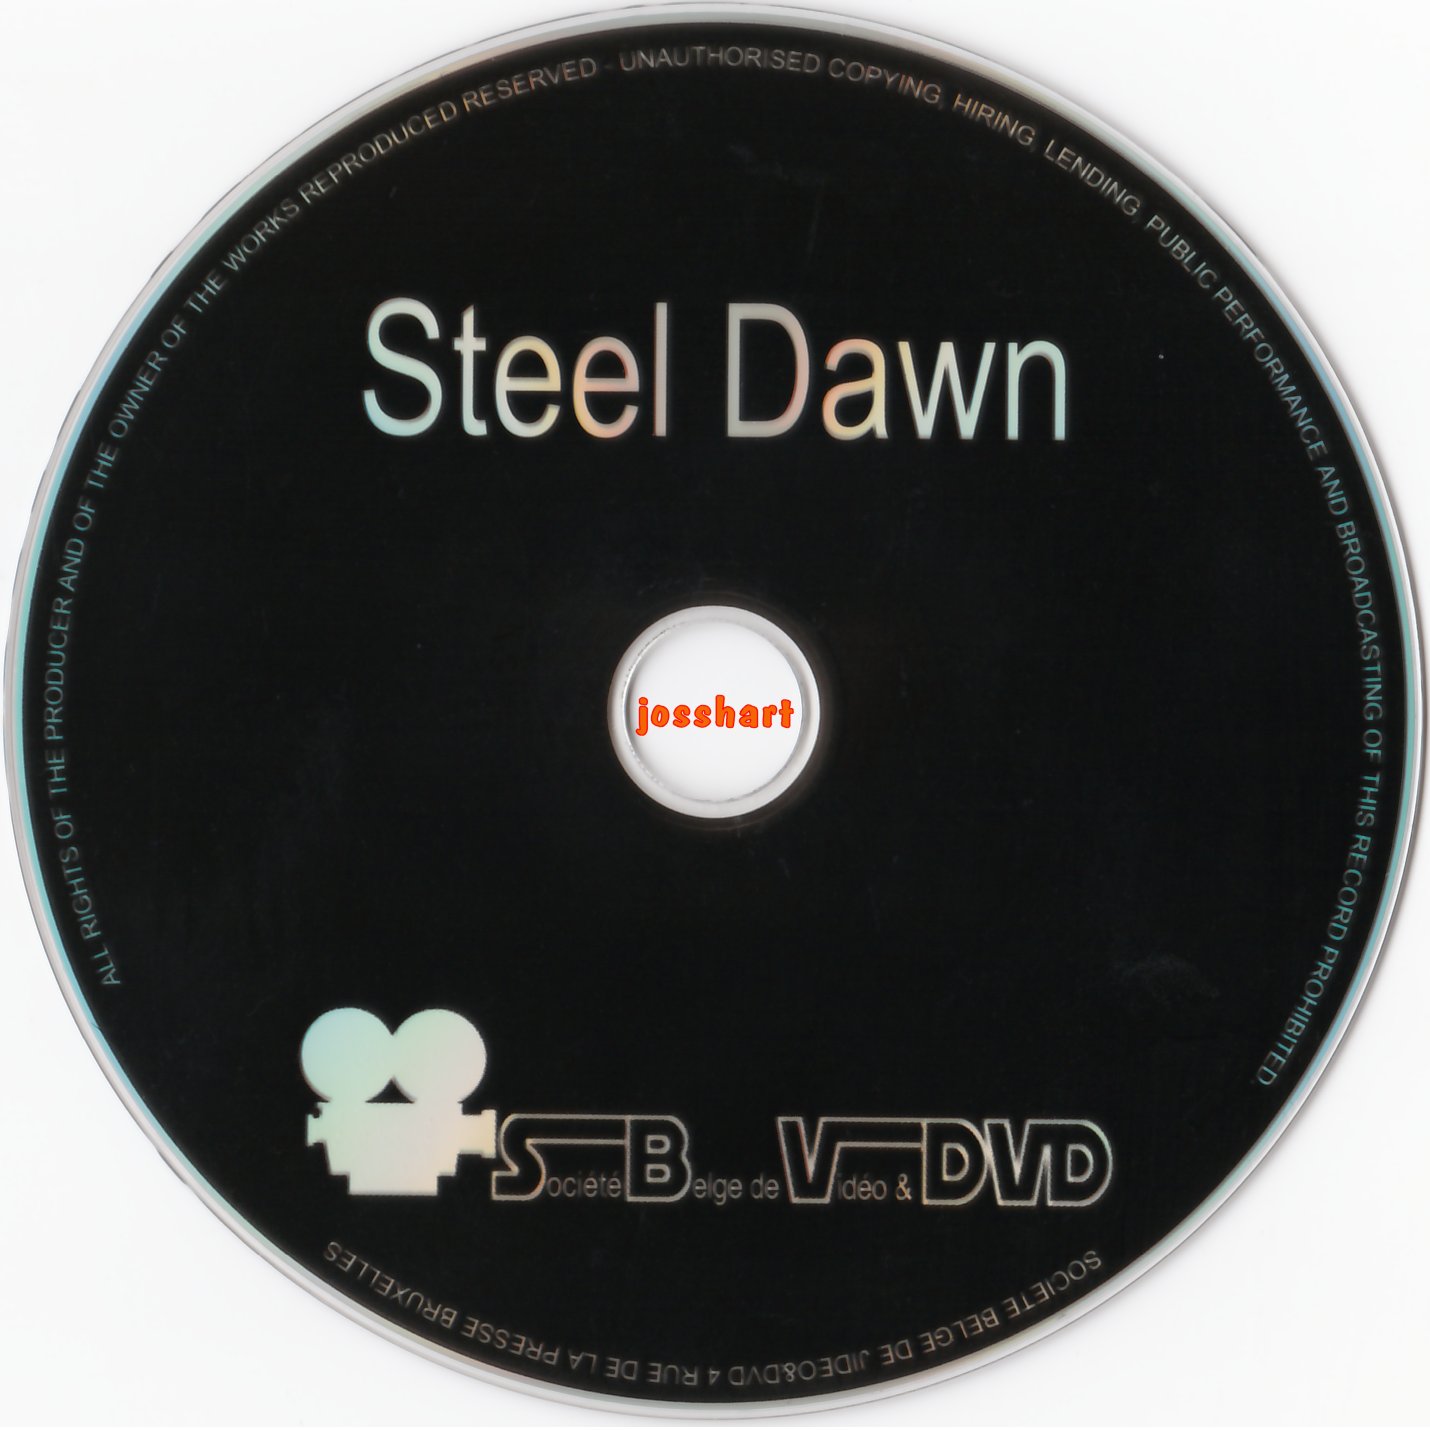 Steel Dawn v2